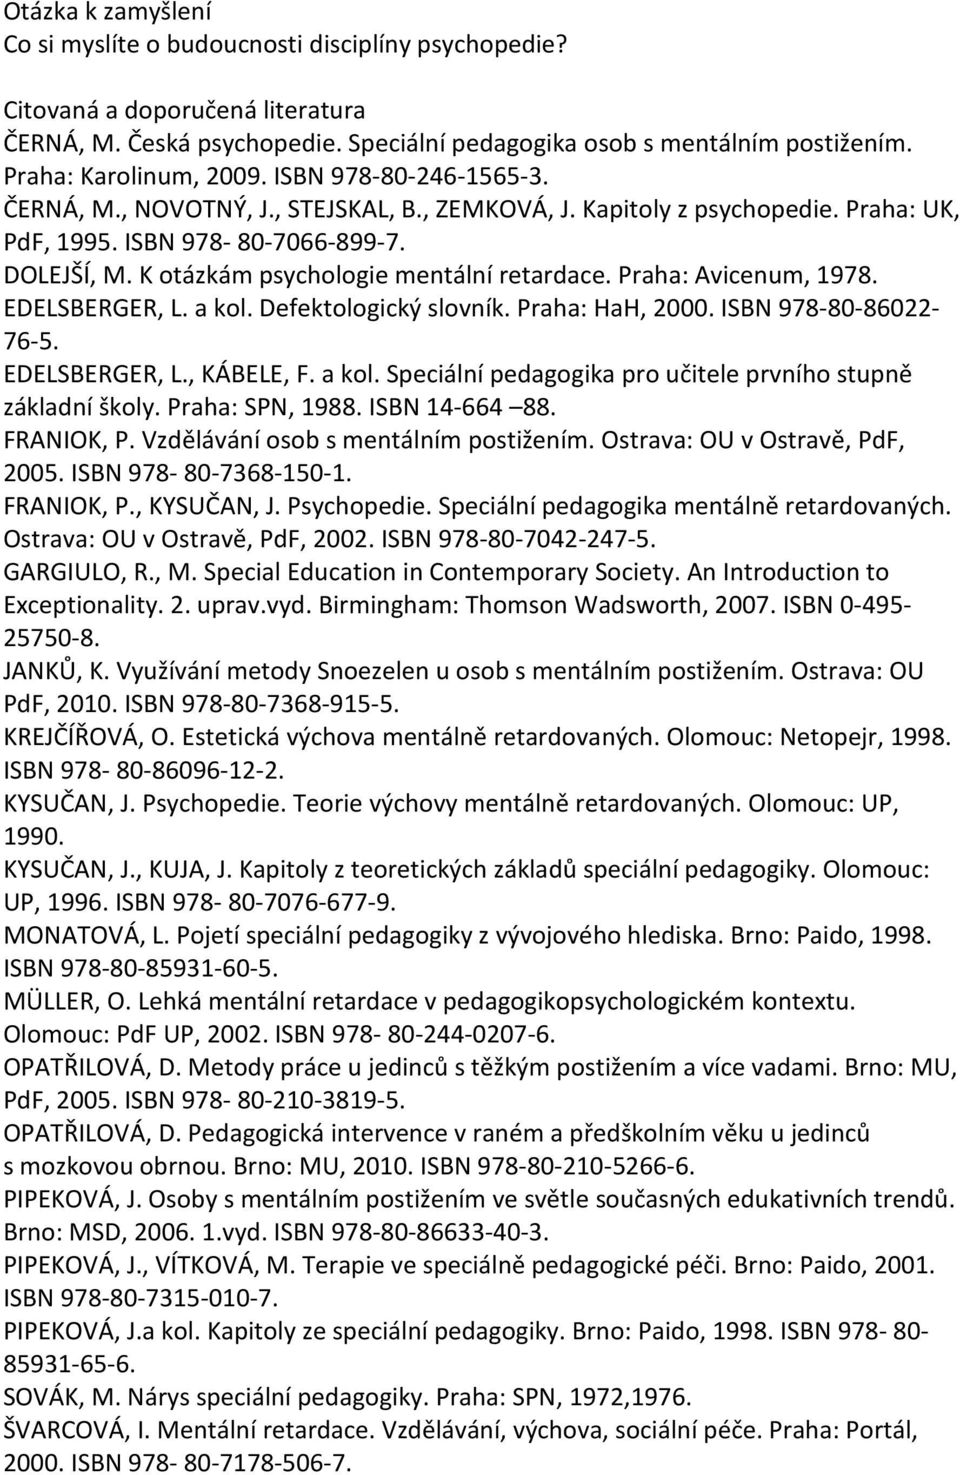 K otázkám psychologie mentální retardace. Praha: Avicenum, 1978. EDELSBERGER, L. a kol. Defektologický slovník. Praha: HaH, 2000. ISBN 978-80-86022-76-5. EDELSBERGER, L., KÁBELE, F. a kol. Speciální pedagogika pro učitele prvního stupně základní školy.